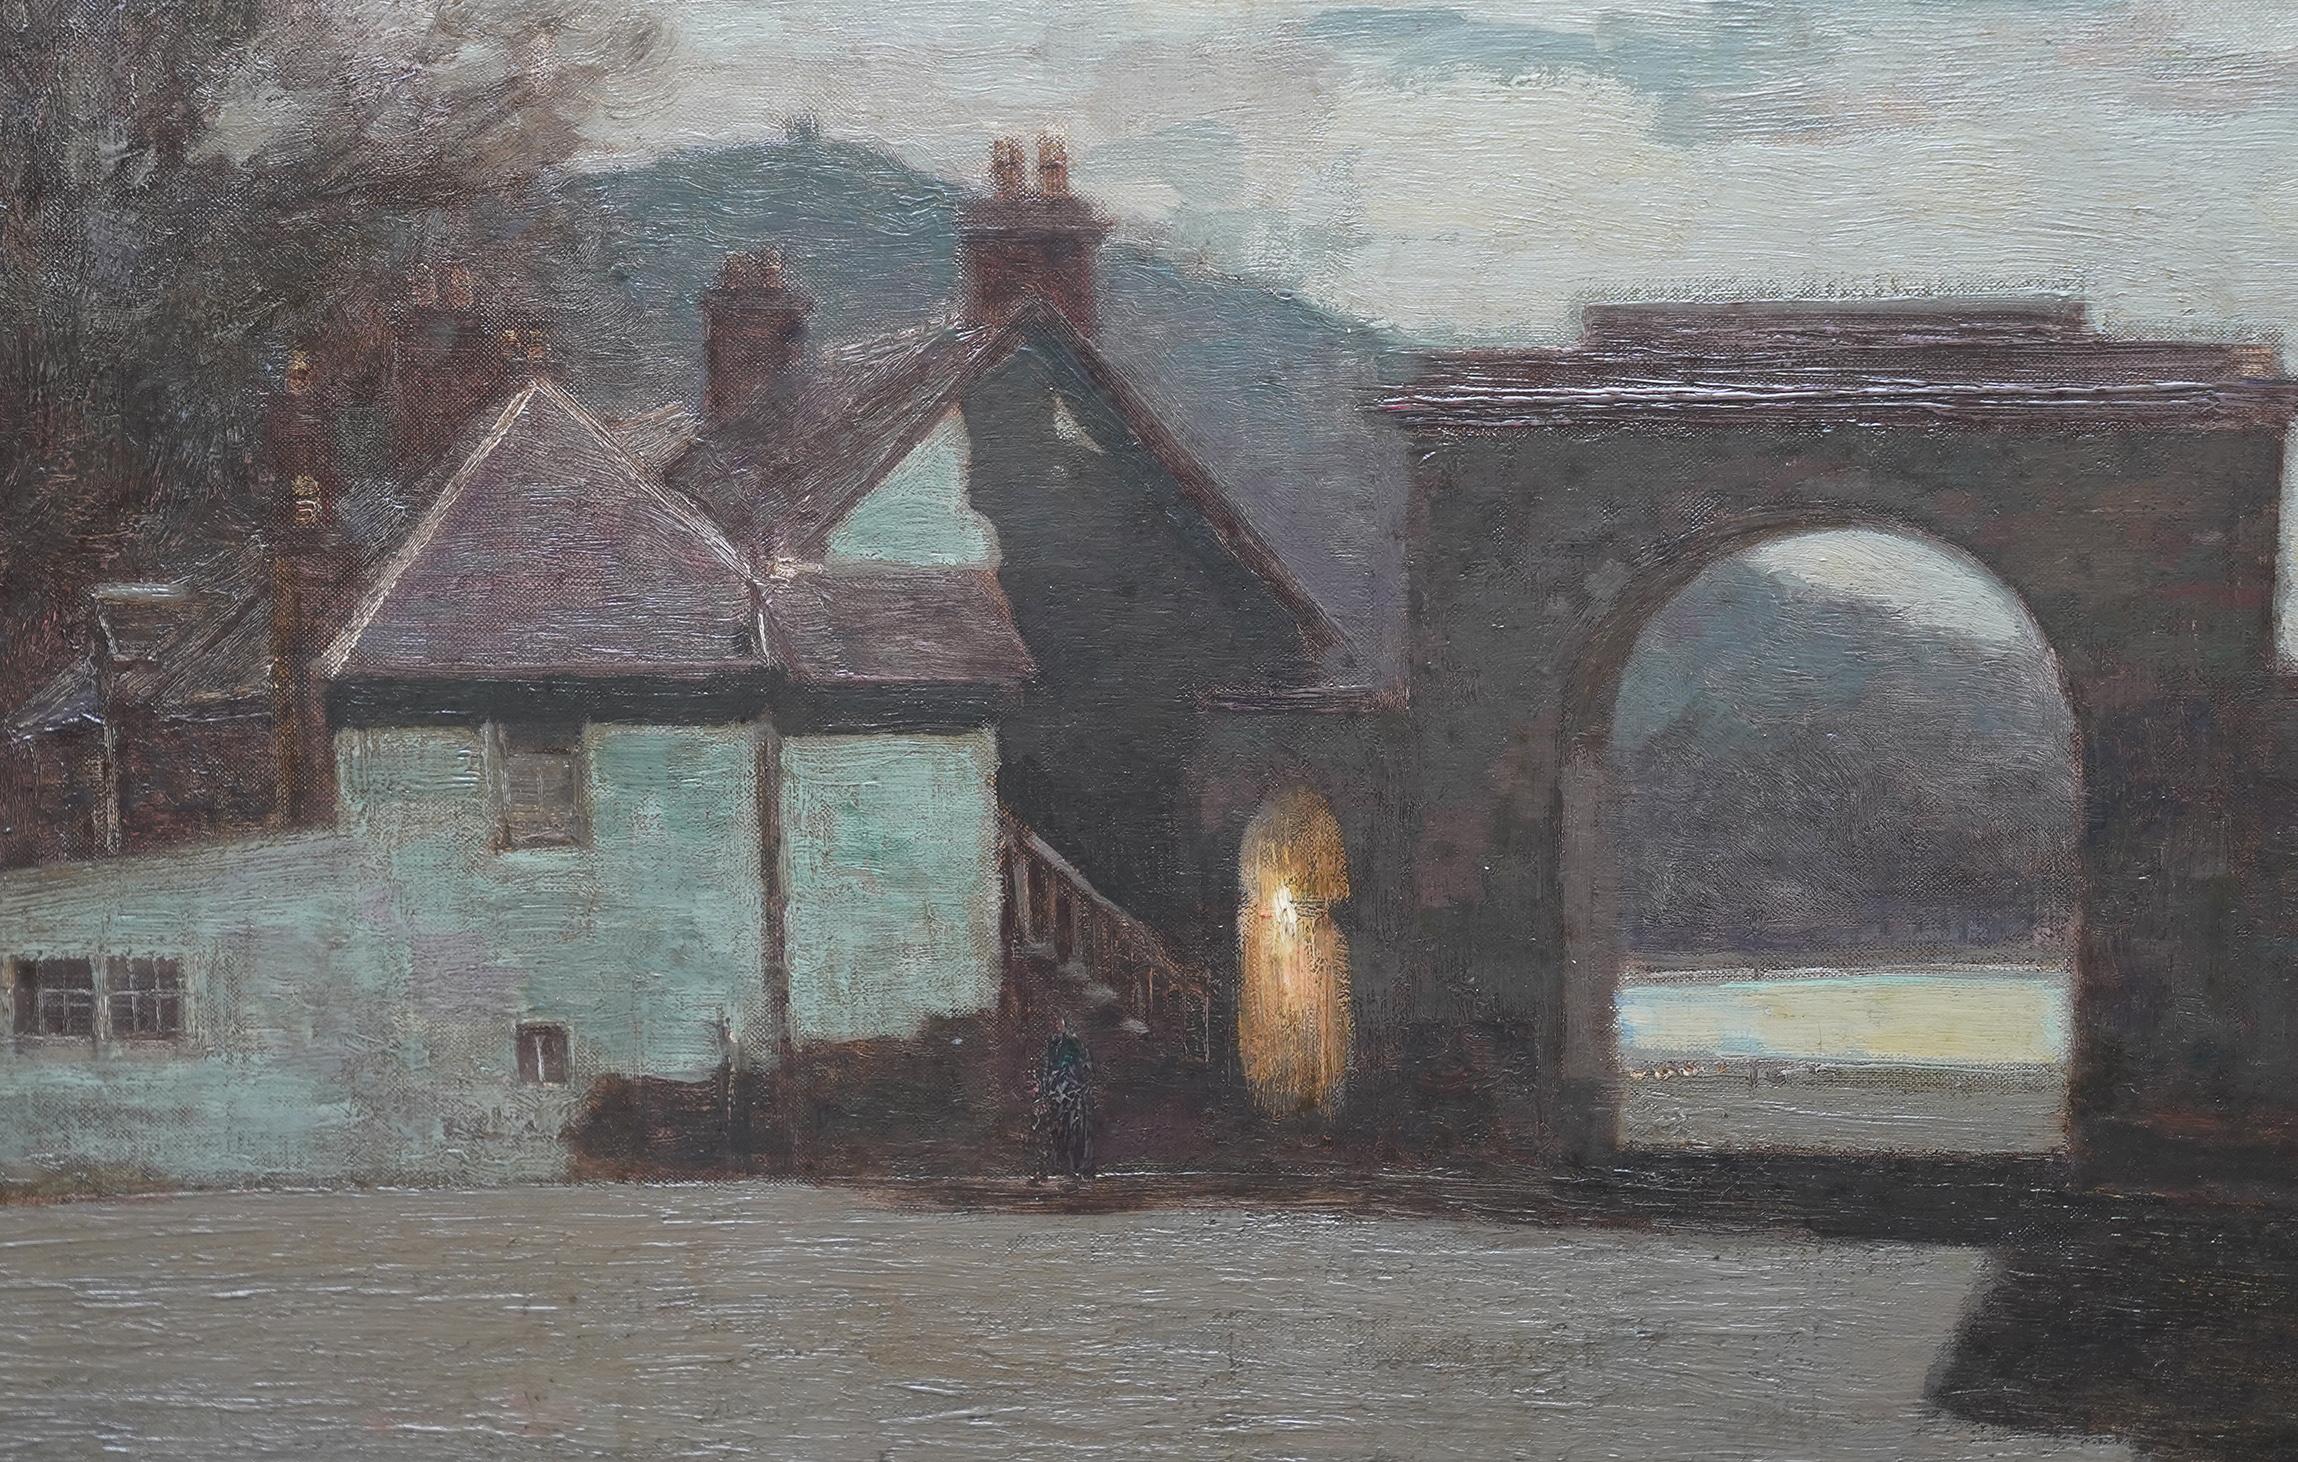 Une grande peinture à l'huile originale sur toile de George Houston RSA. Elle représente le Loch Fyne Argyll en Ecosse le soir. Peinte dans un style impressionniste vers 1920, elle constitue un très bon exemple de son travail à cette époque et de la